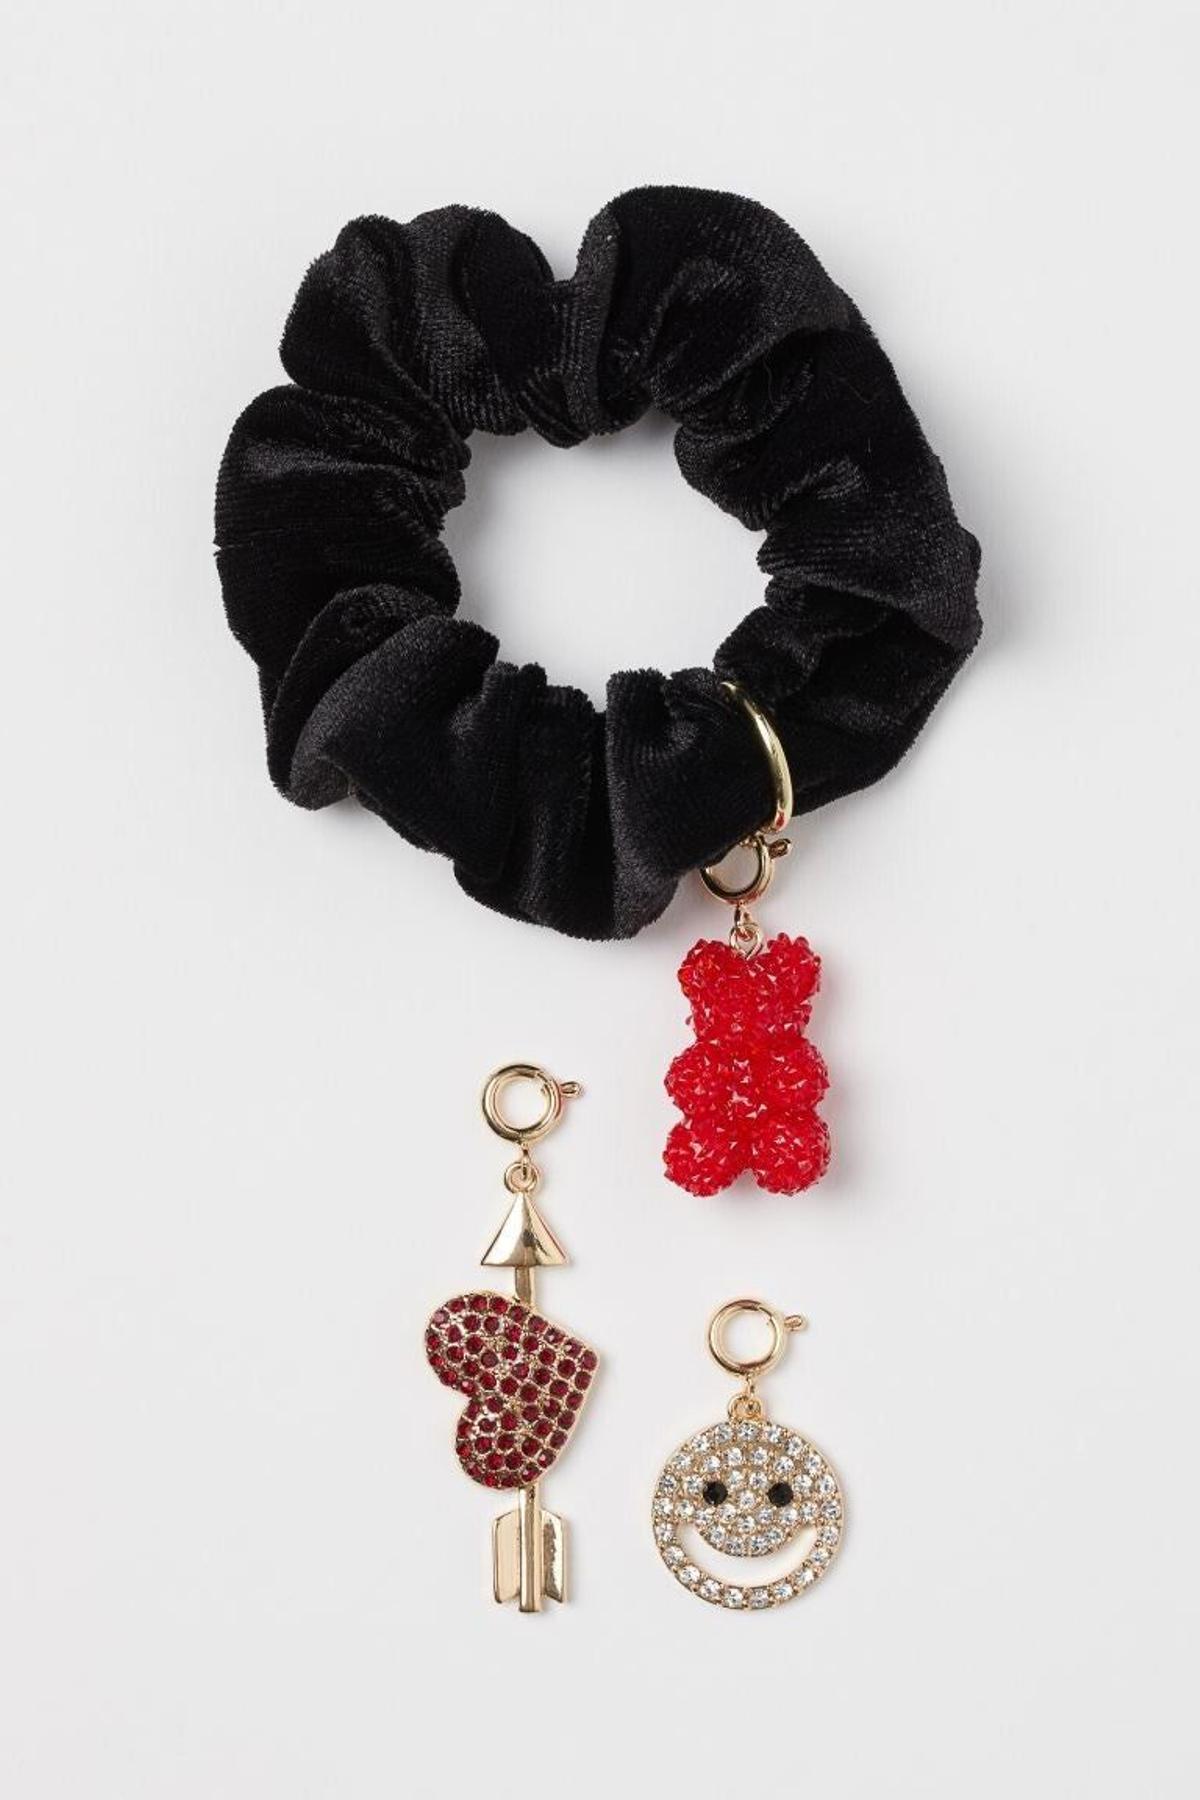 Scrunchie de tercipelo negro con tres charms en forma de corazón, una happy face y un osito de gominola.